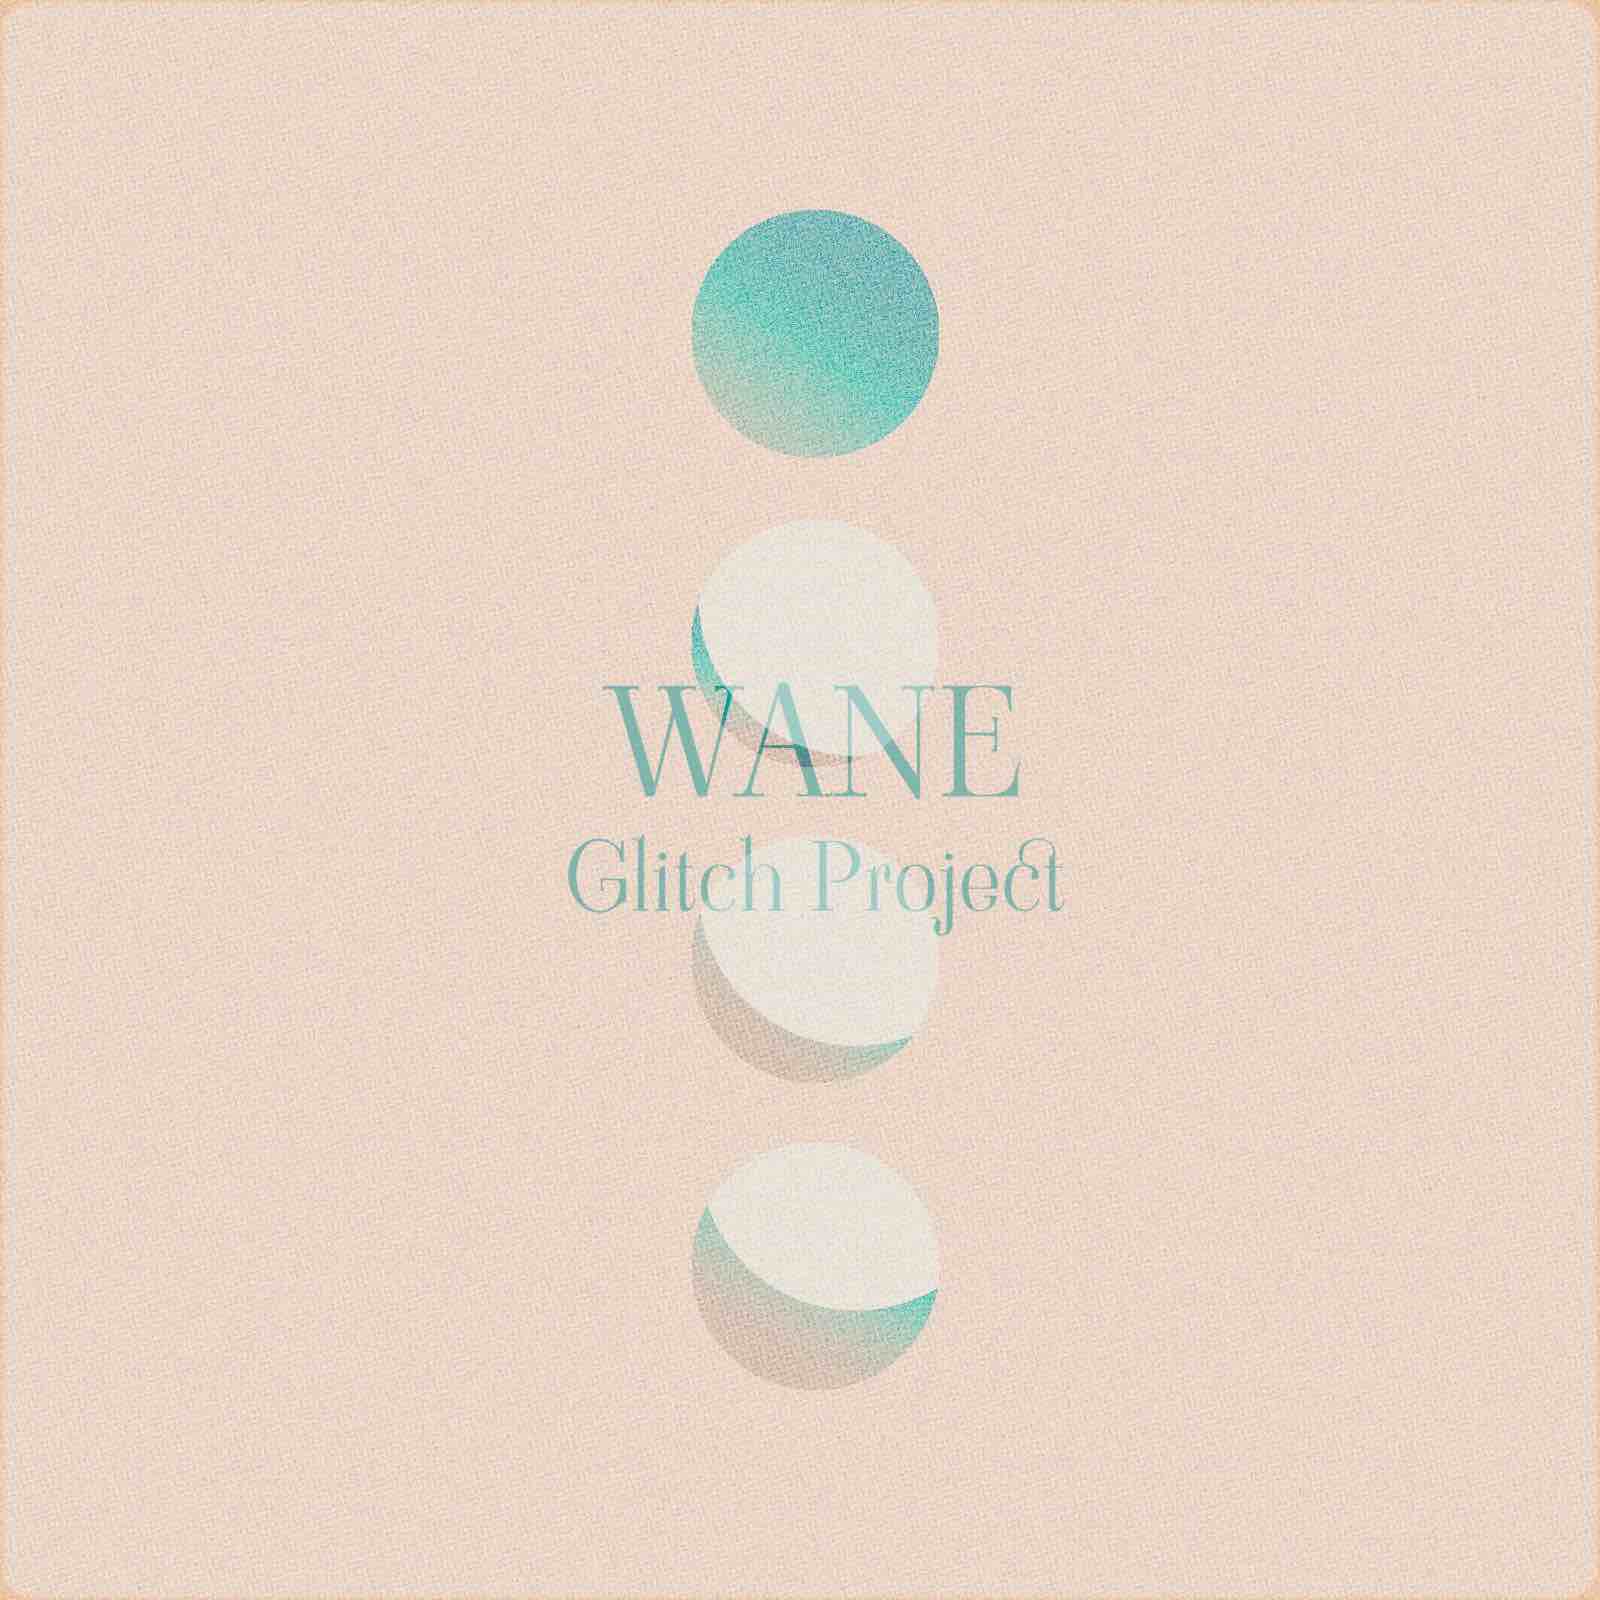 wane